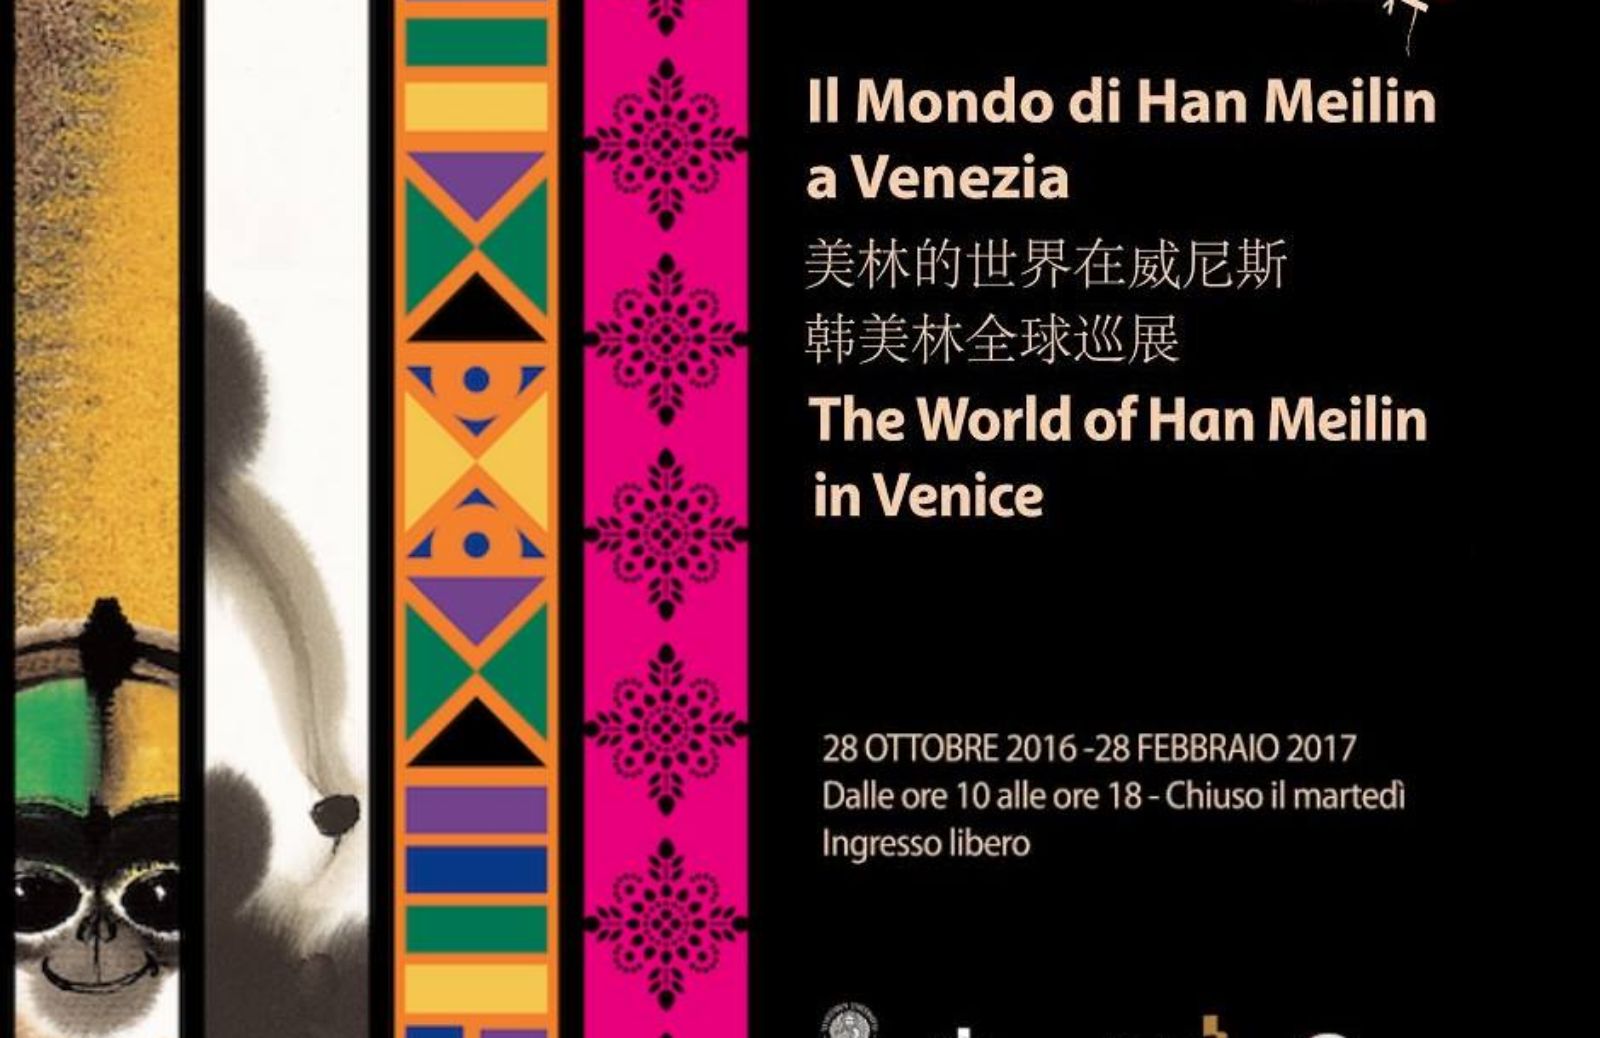 Arte e mostre: il mondo di Han Meilin a Venezia